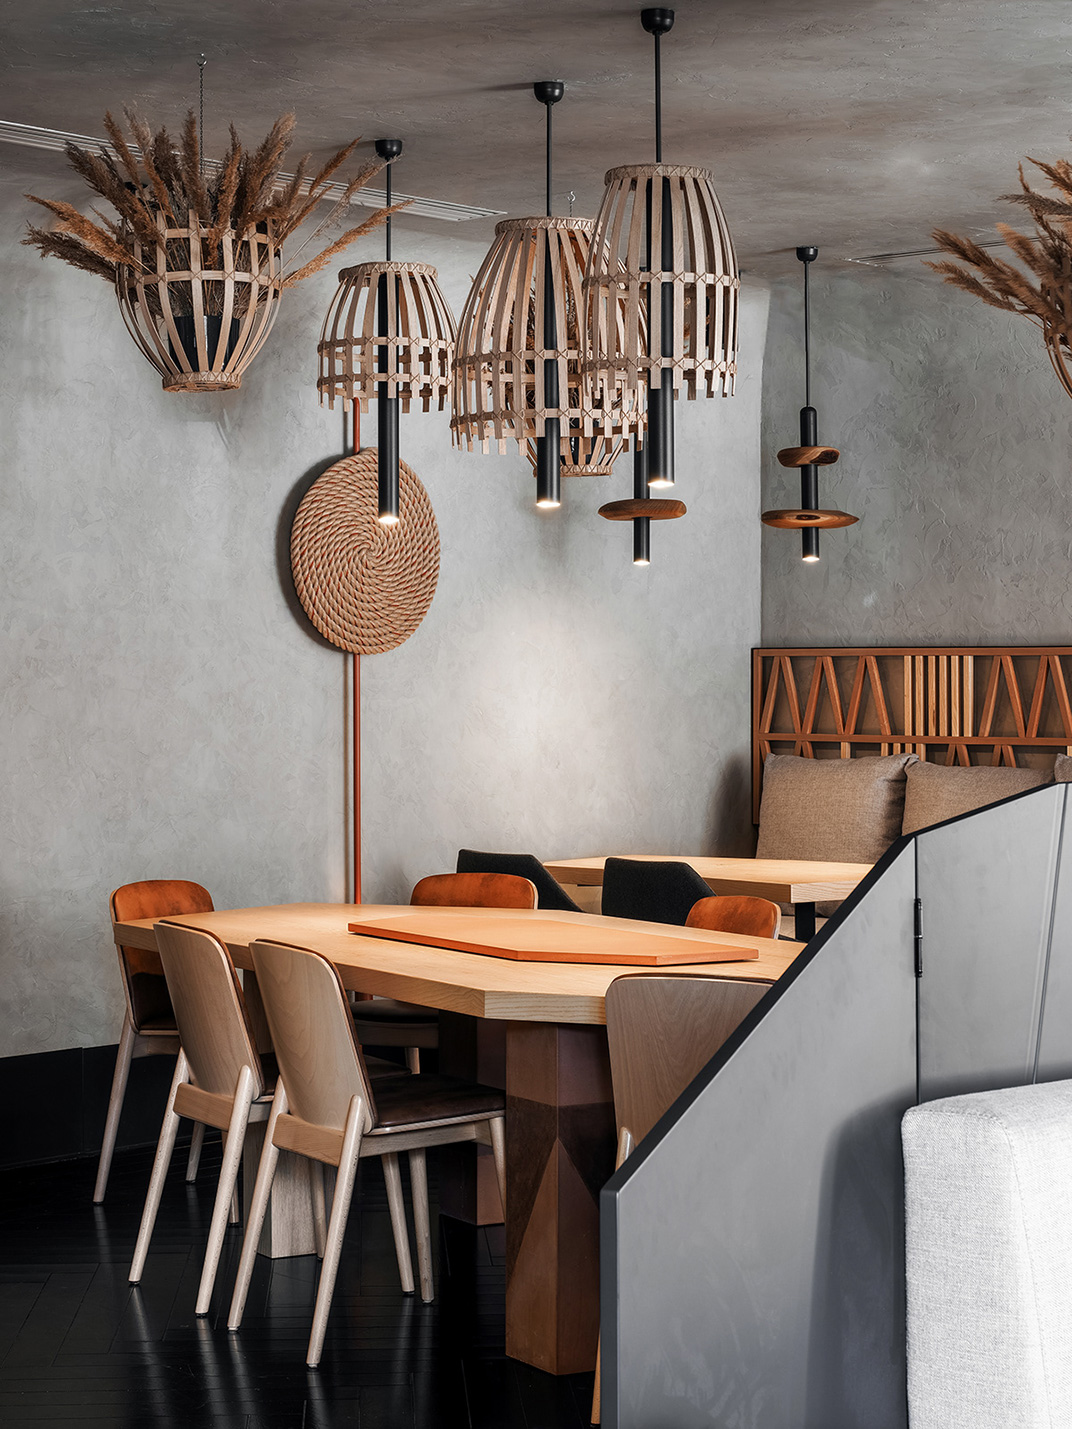 狩猎餐厅HUNT restaurant 俄罗斯 混凝土 皮革 木料 现代建筑 logo设计 vi设计 空间设计